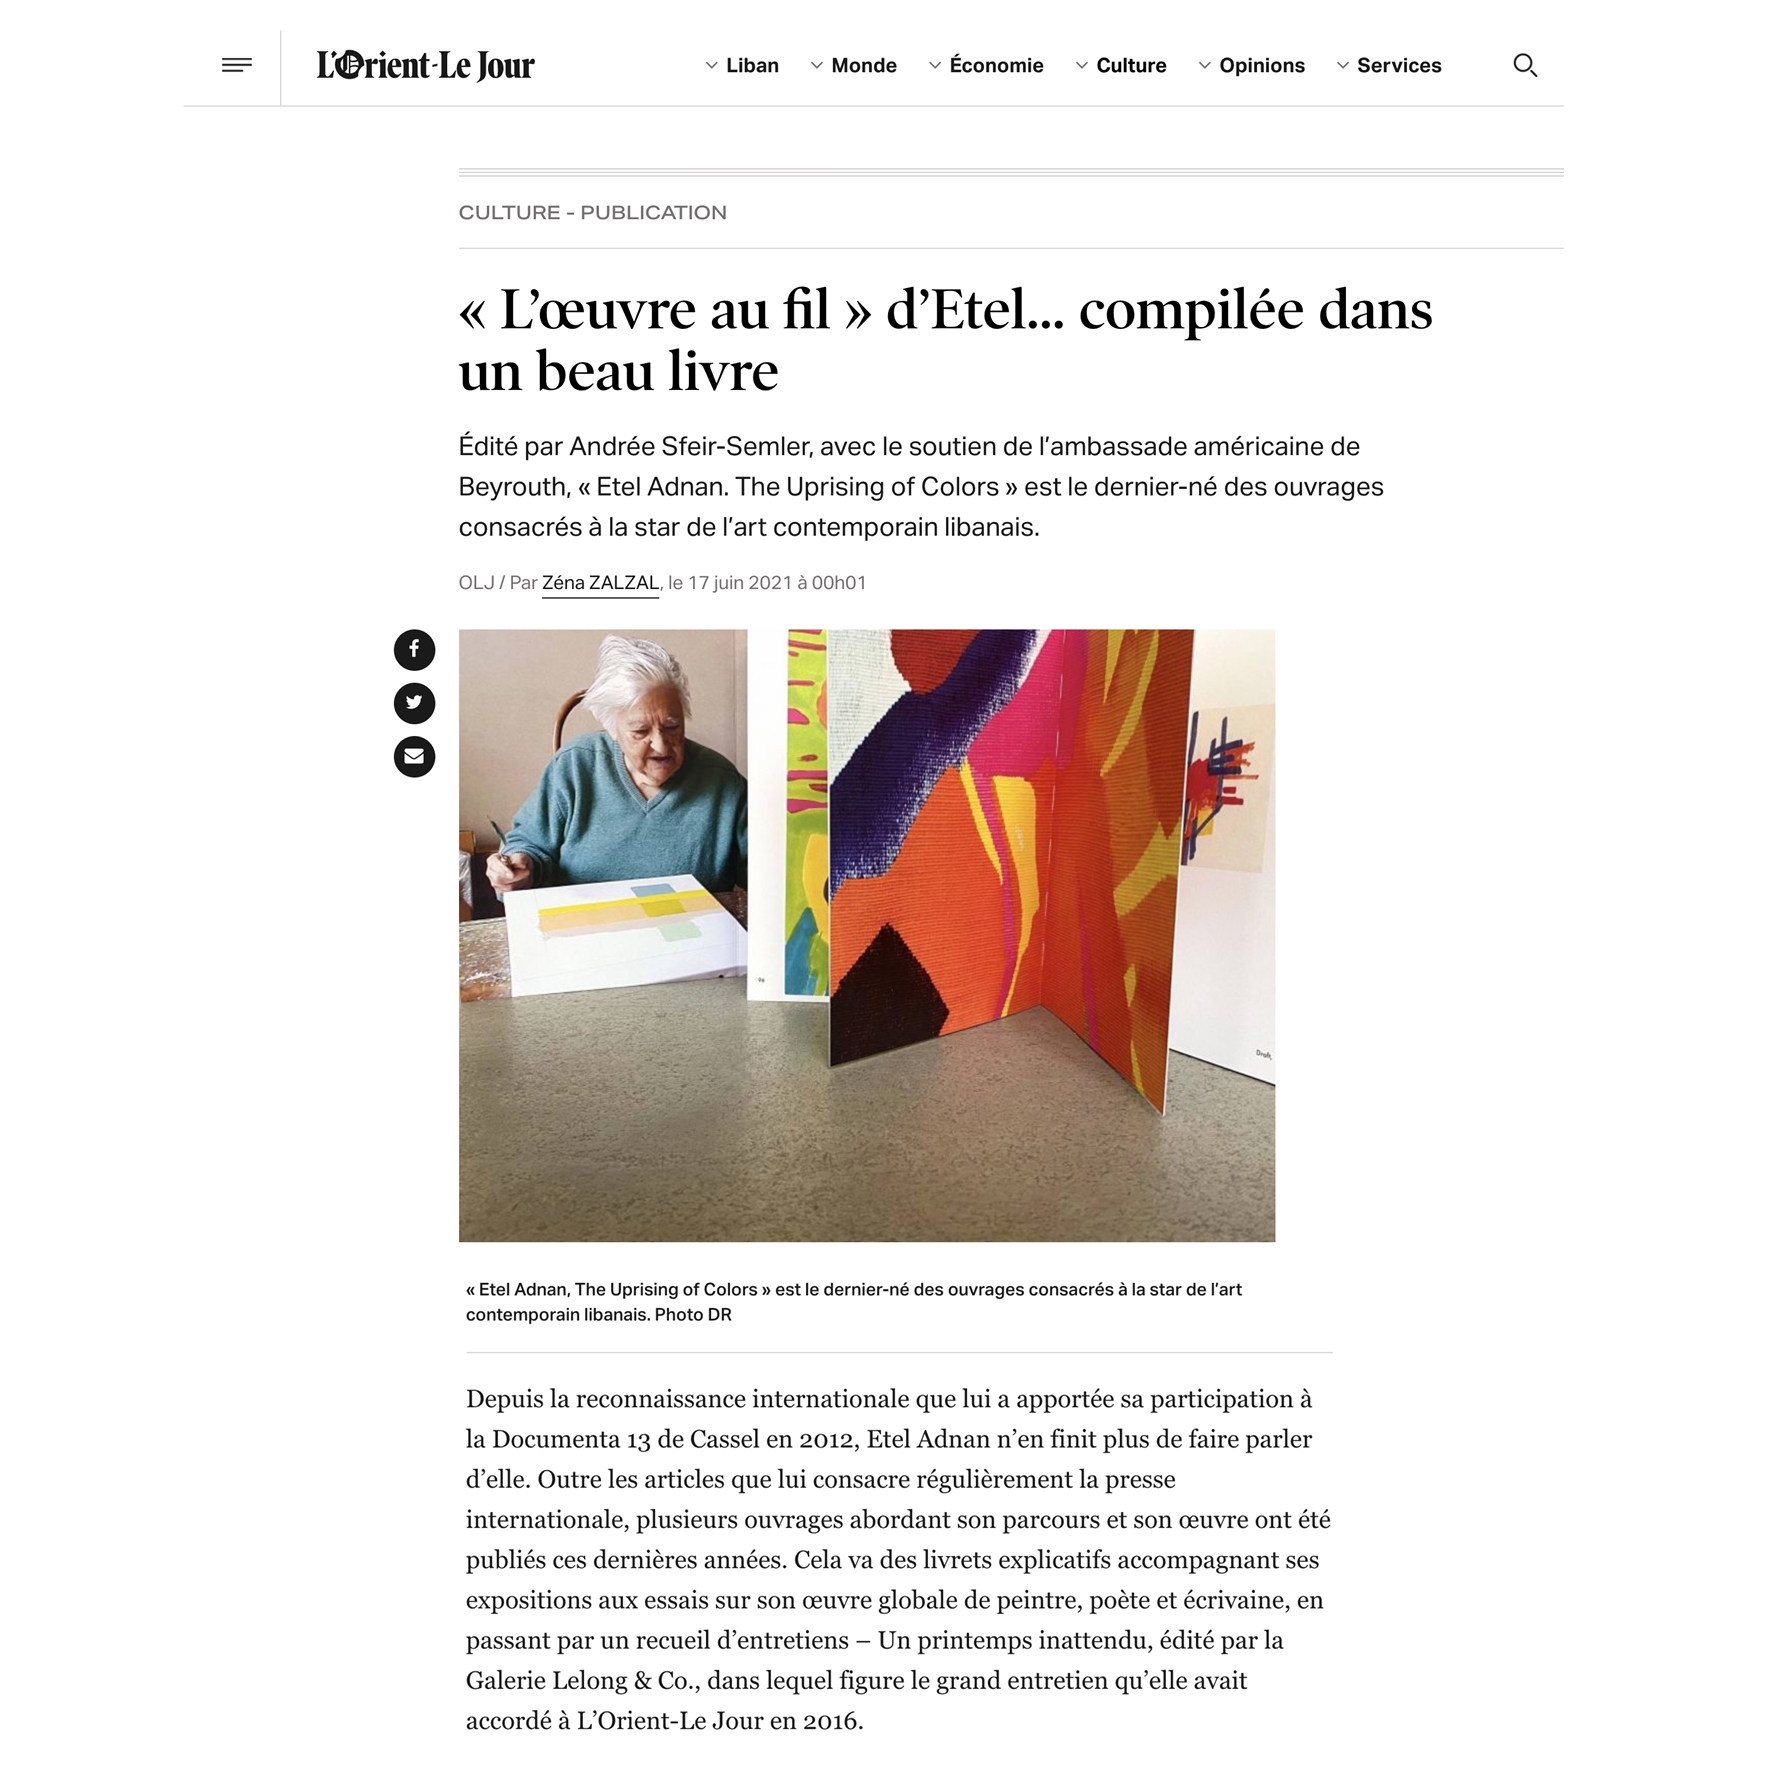 "«L’œuvre au fil» d’Etel...compilée dans un beau livre" | Article by Zéna Zalzal for L'Orient-Le Jour from June 17, 2021